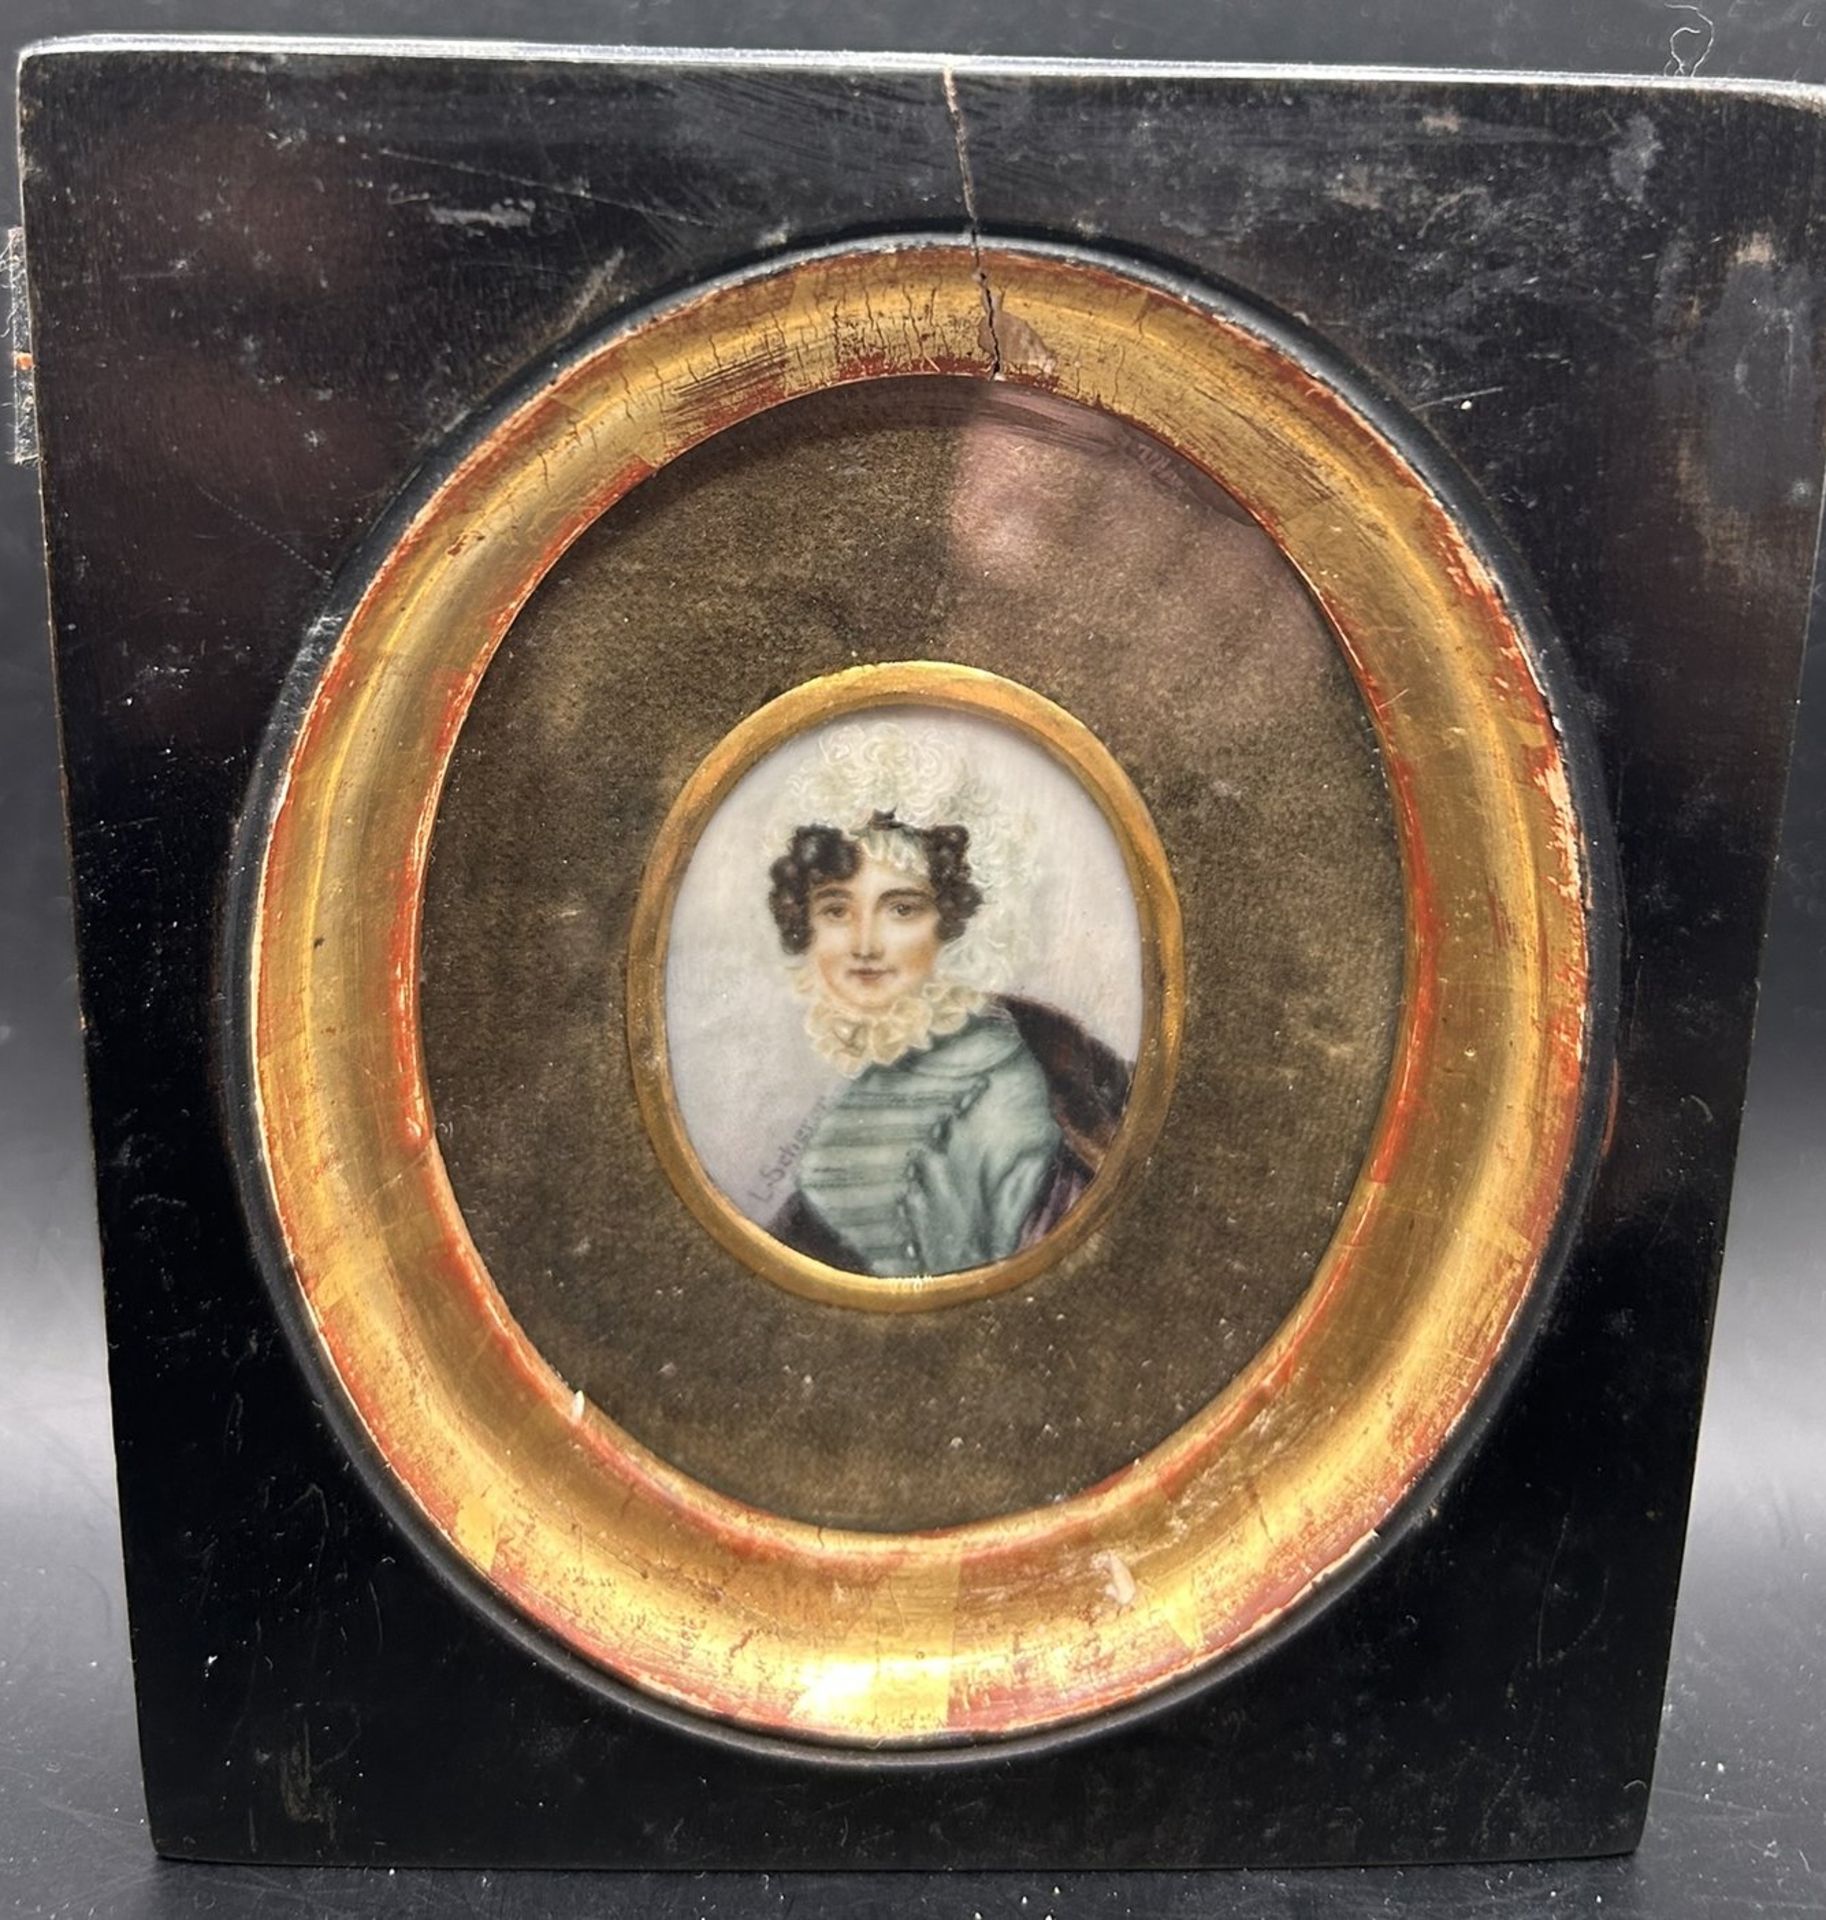 L. Scherer, Miniaturportrait einer jungen Frau, um 1850, verso bezeichnet "nach Carl von Saar" 1828 - Image 2 of 3